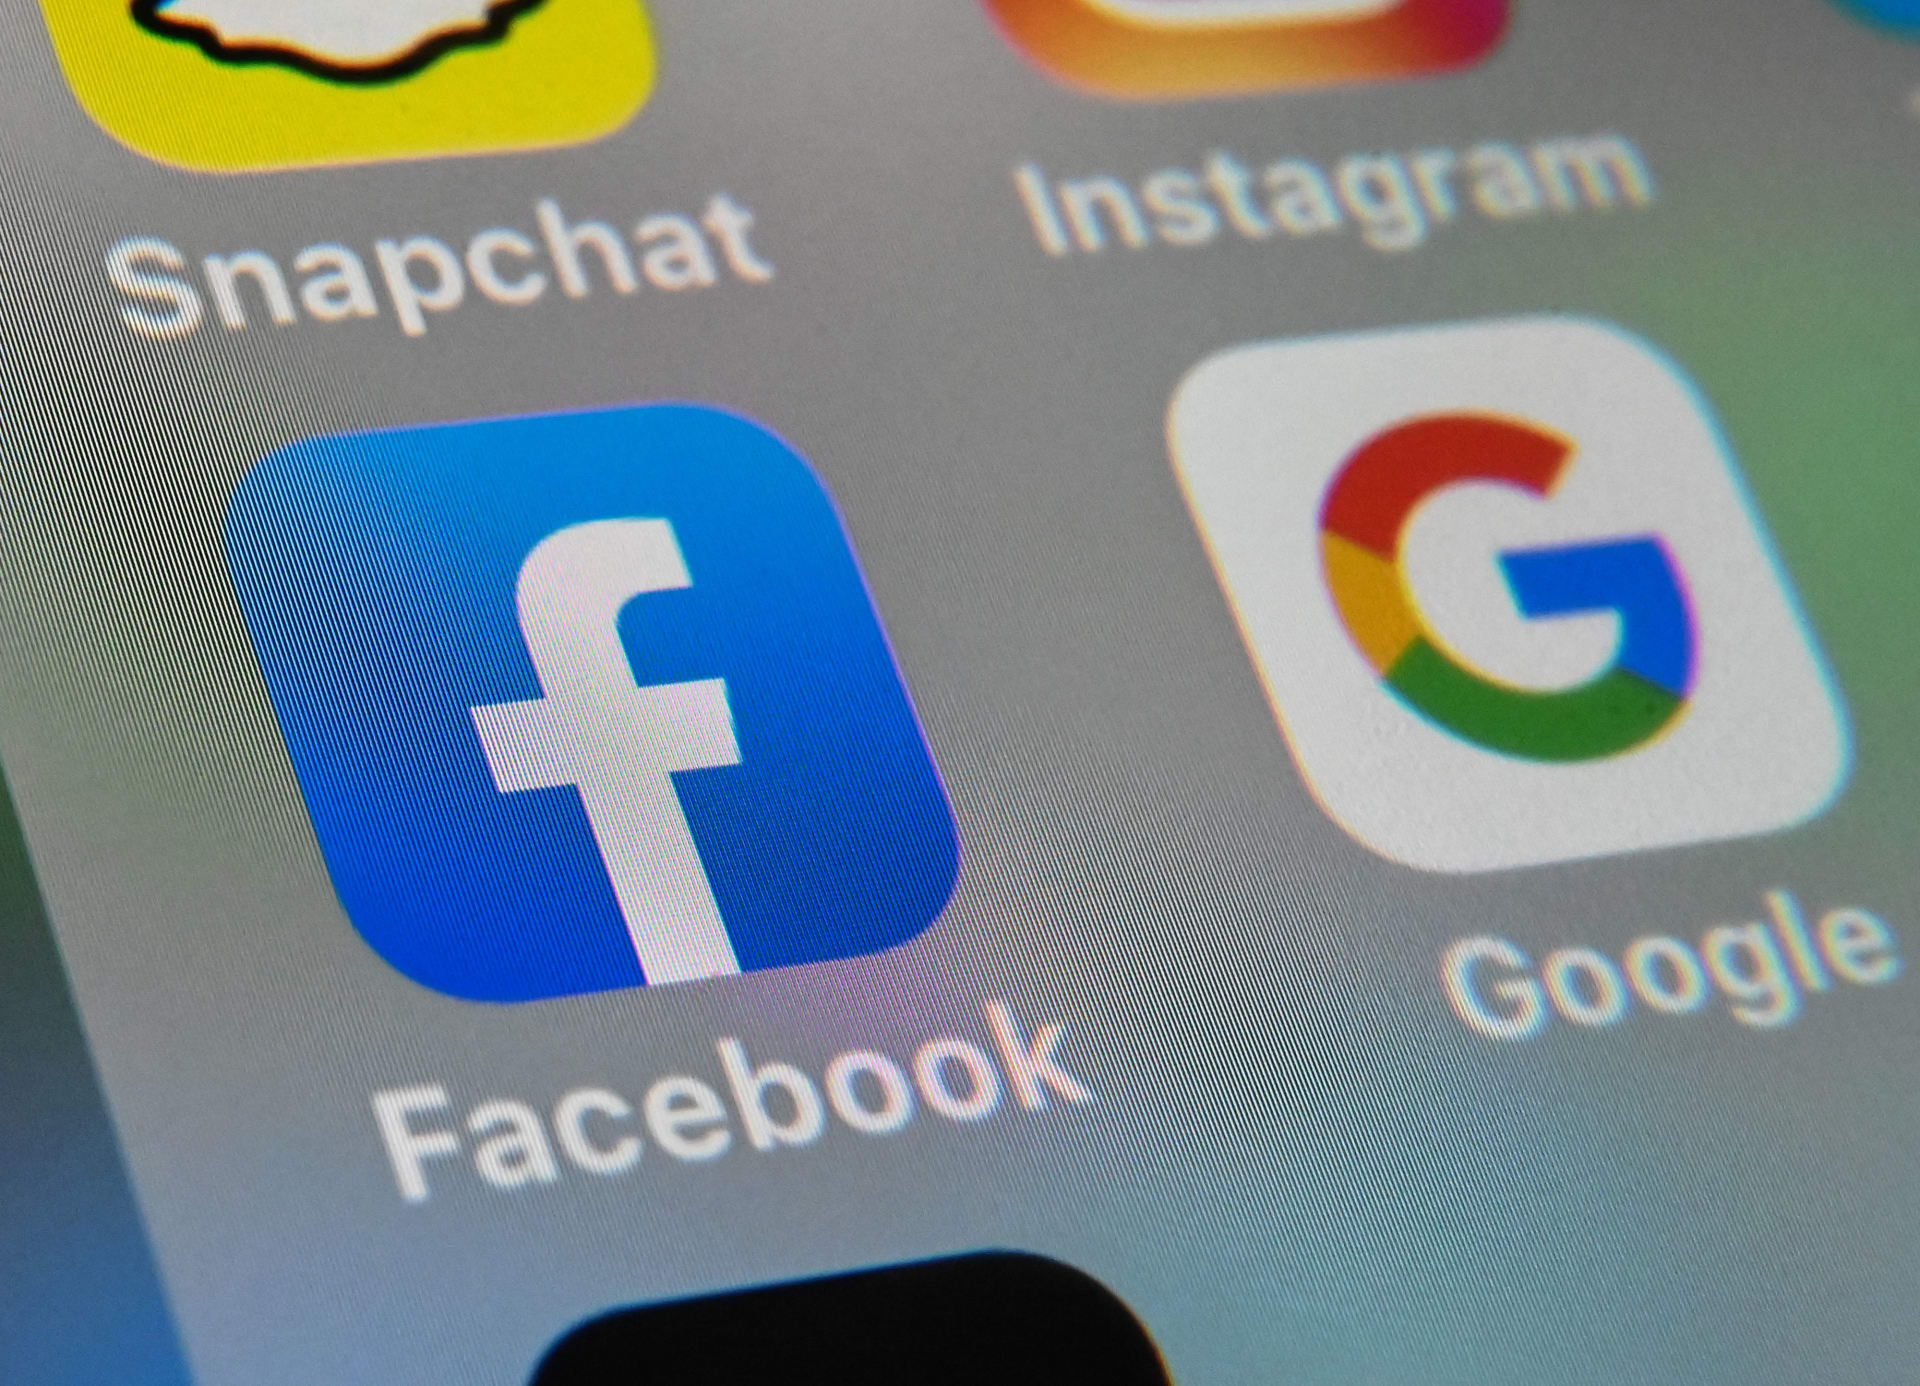 فيسبوك توقع صفقة مع "نيوز كورب أستراليا" لنشر الأخبار على منصتها